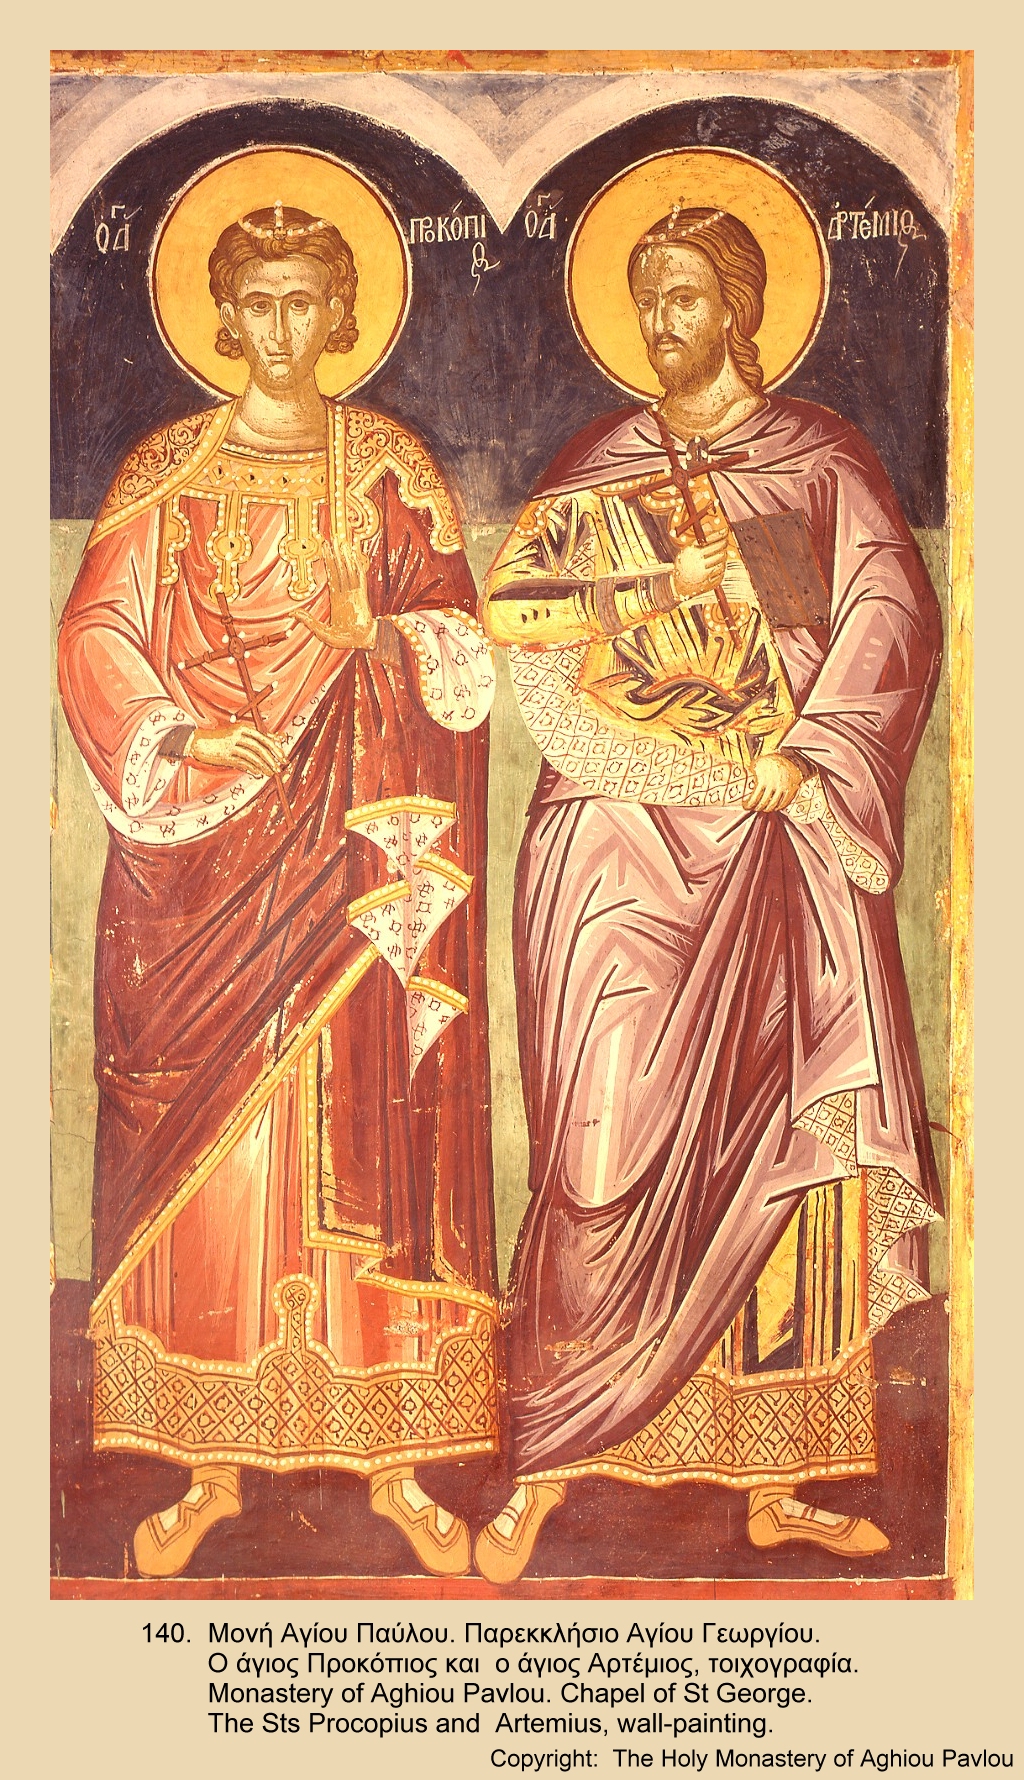 Иконы с двумя святыми. Икона двух святых. Икона с двумя святыми. Икона с двумя мужчинами. Икона с изображением двух святых.